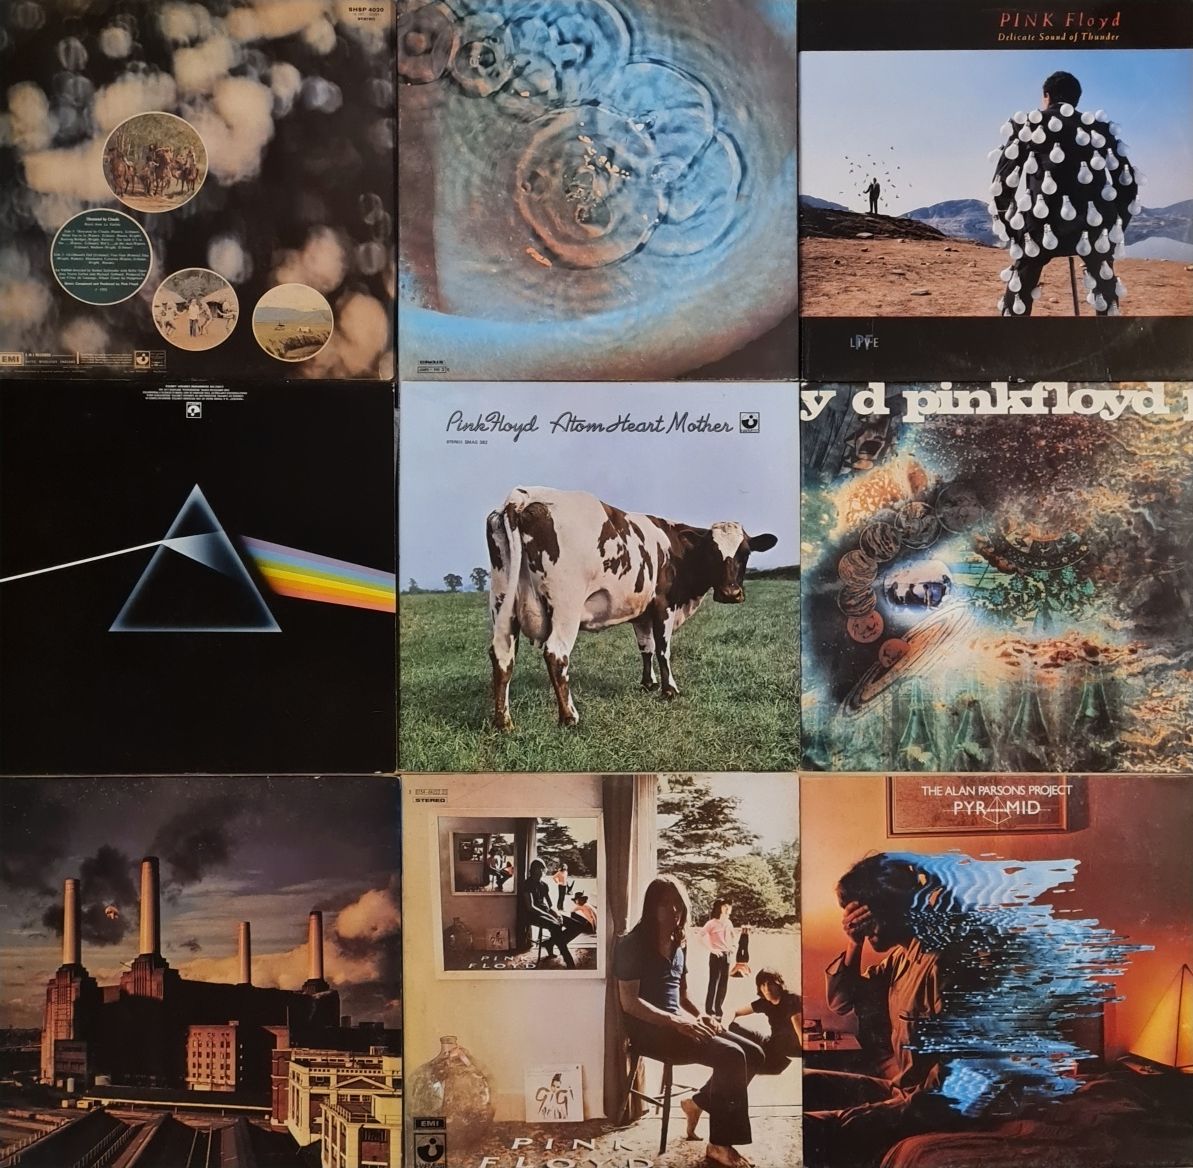 Vinil / vinyl Pink Floyd originale din colecție proprie!